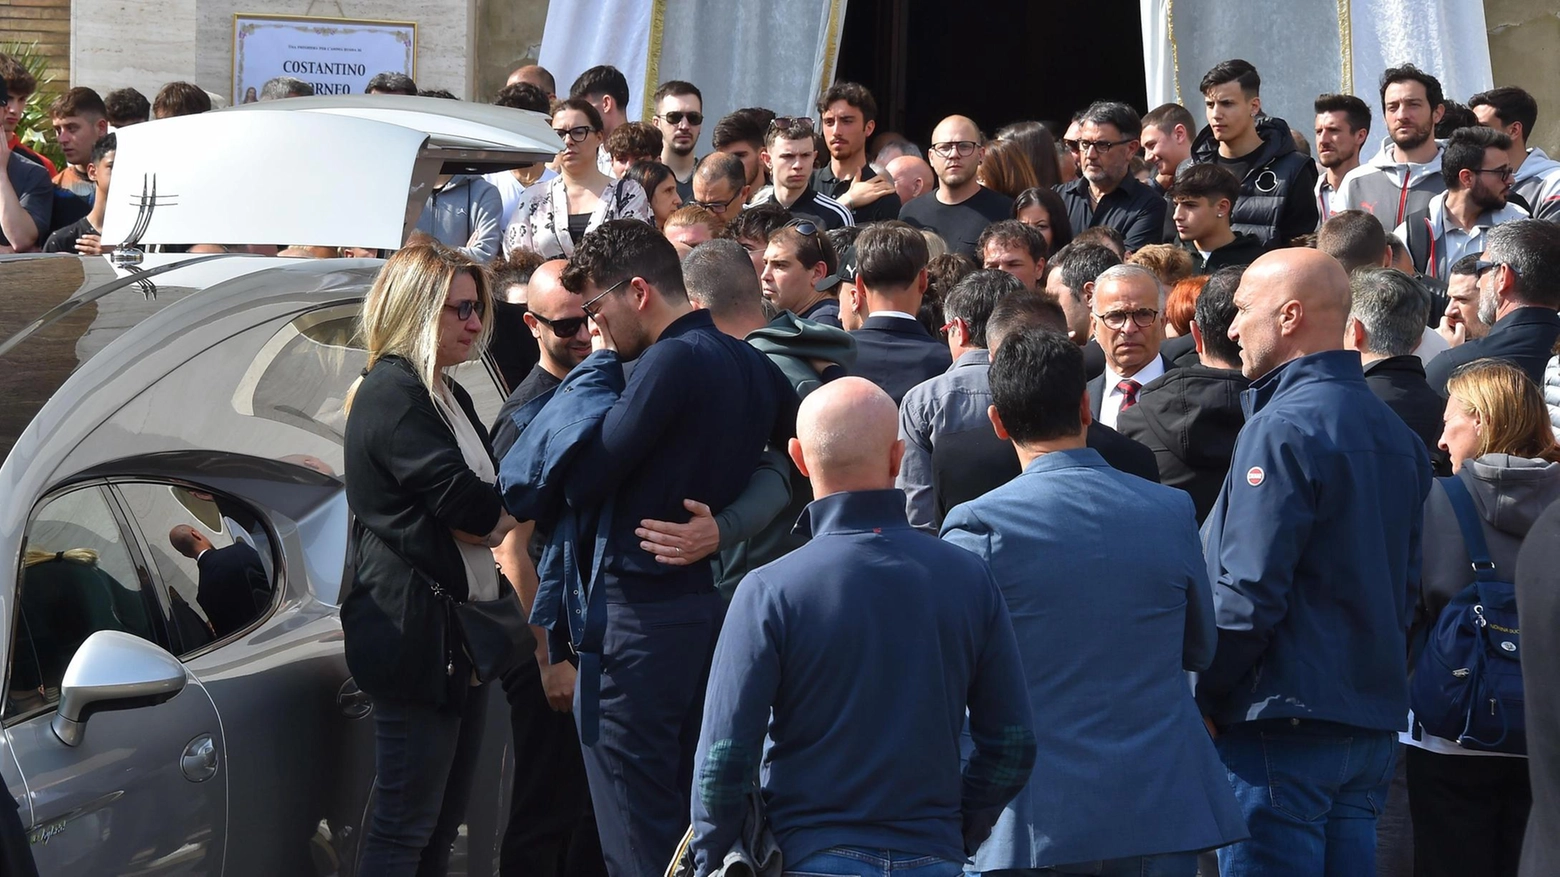 Le giovanili del Milan in lutto. Bagno di folla per l’ultimo saluto all’allenatore Costantino Borneo